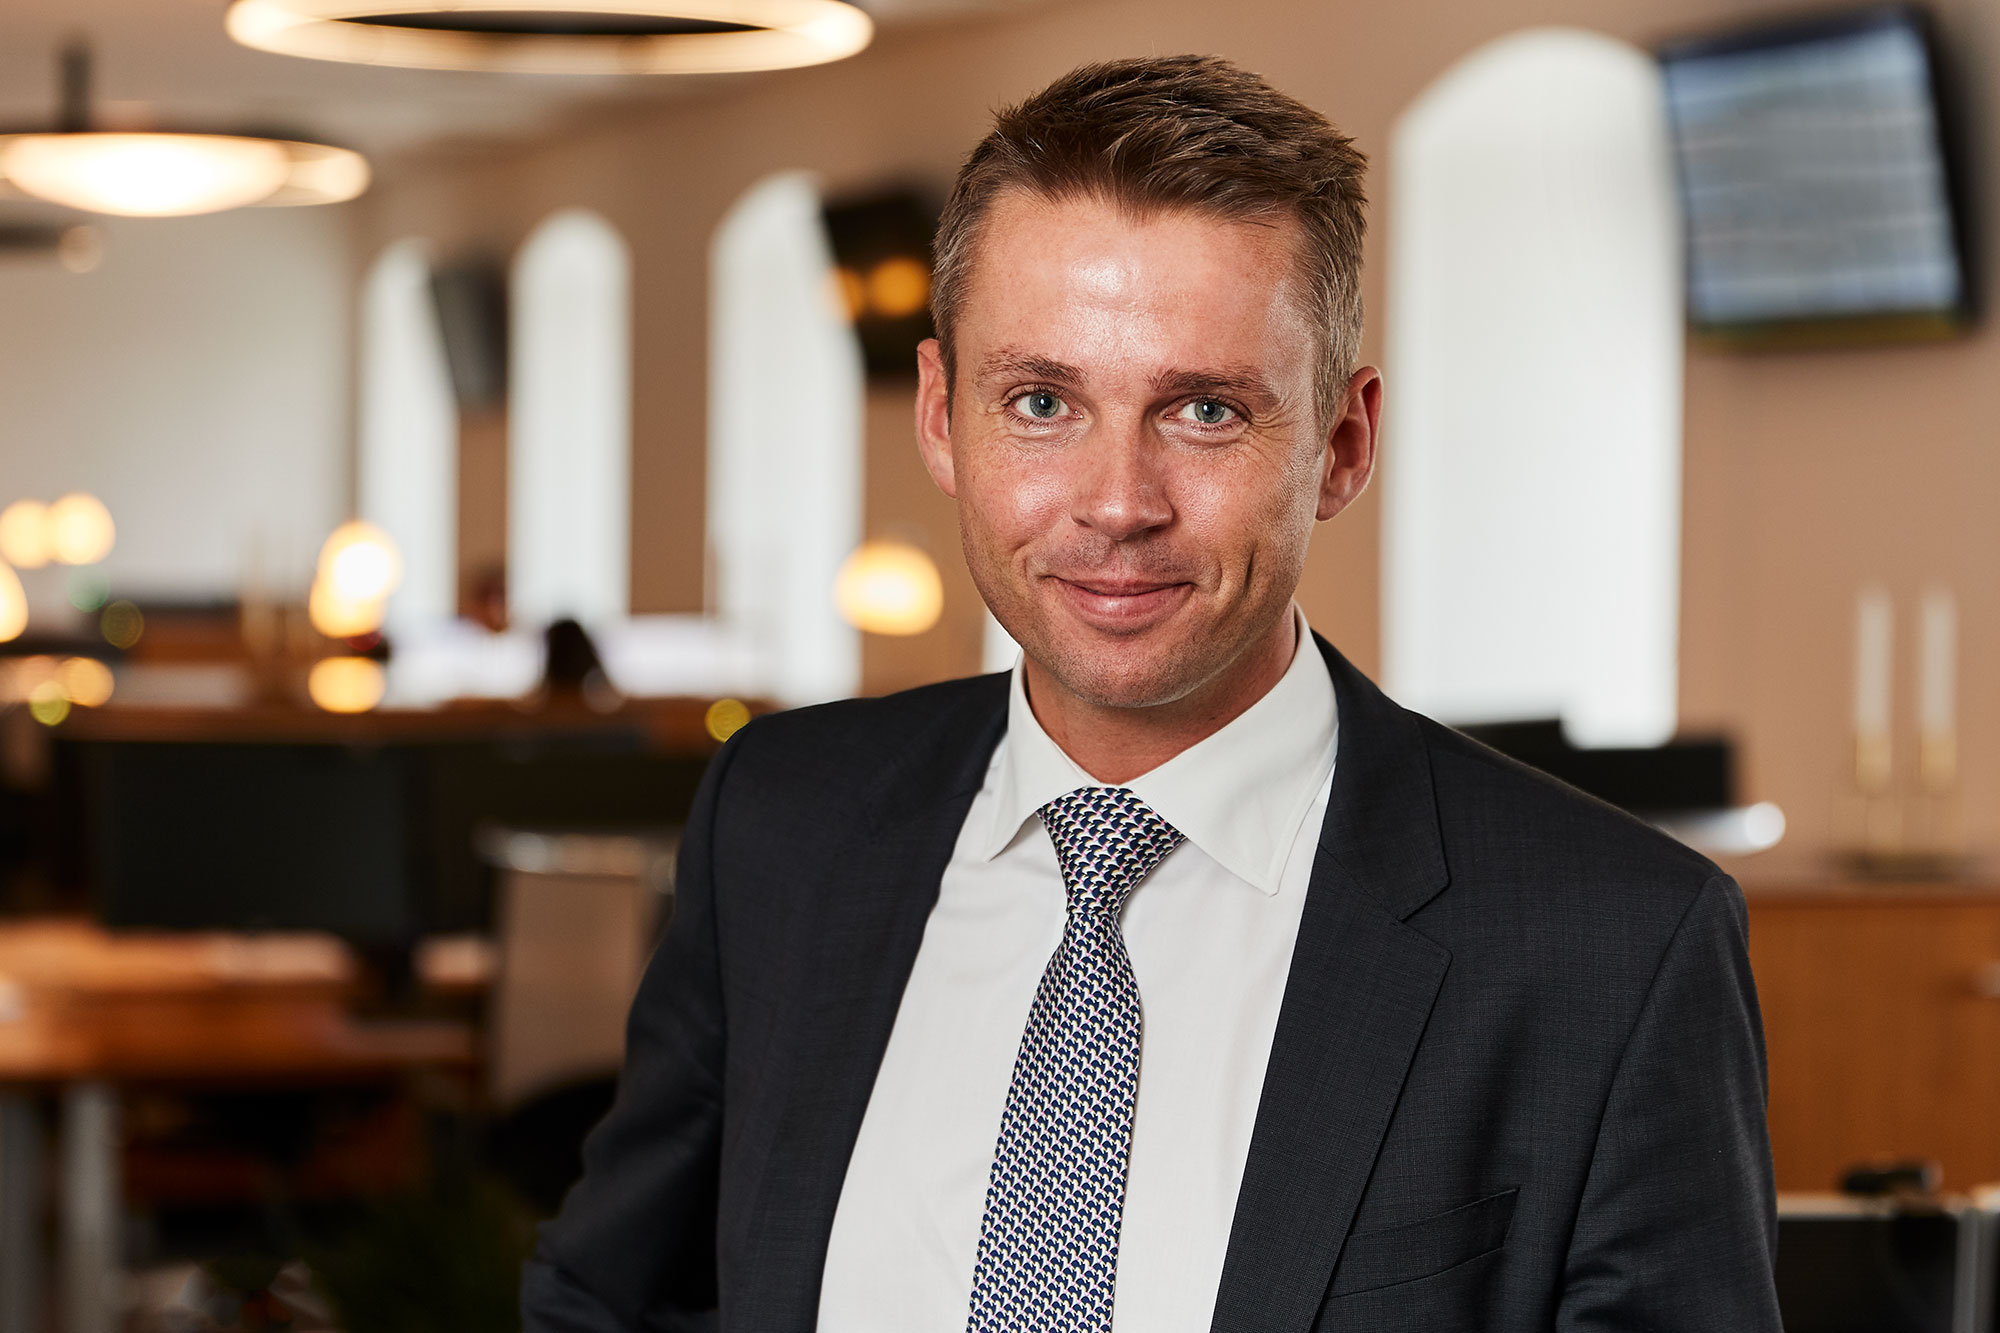 Monjasa Anders Østergaard Owner & Group CEO